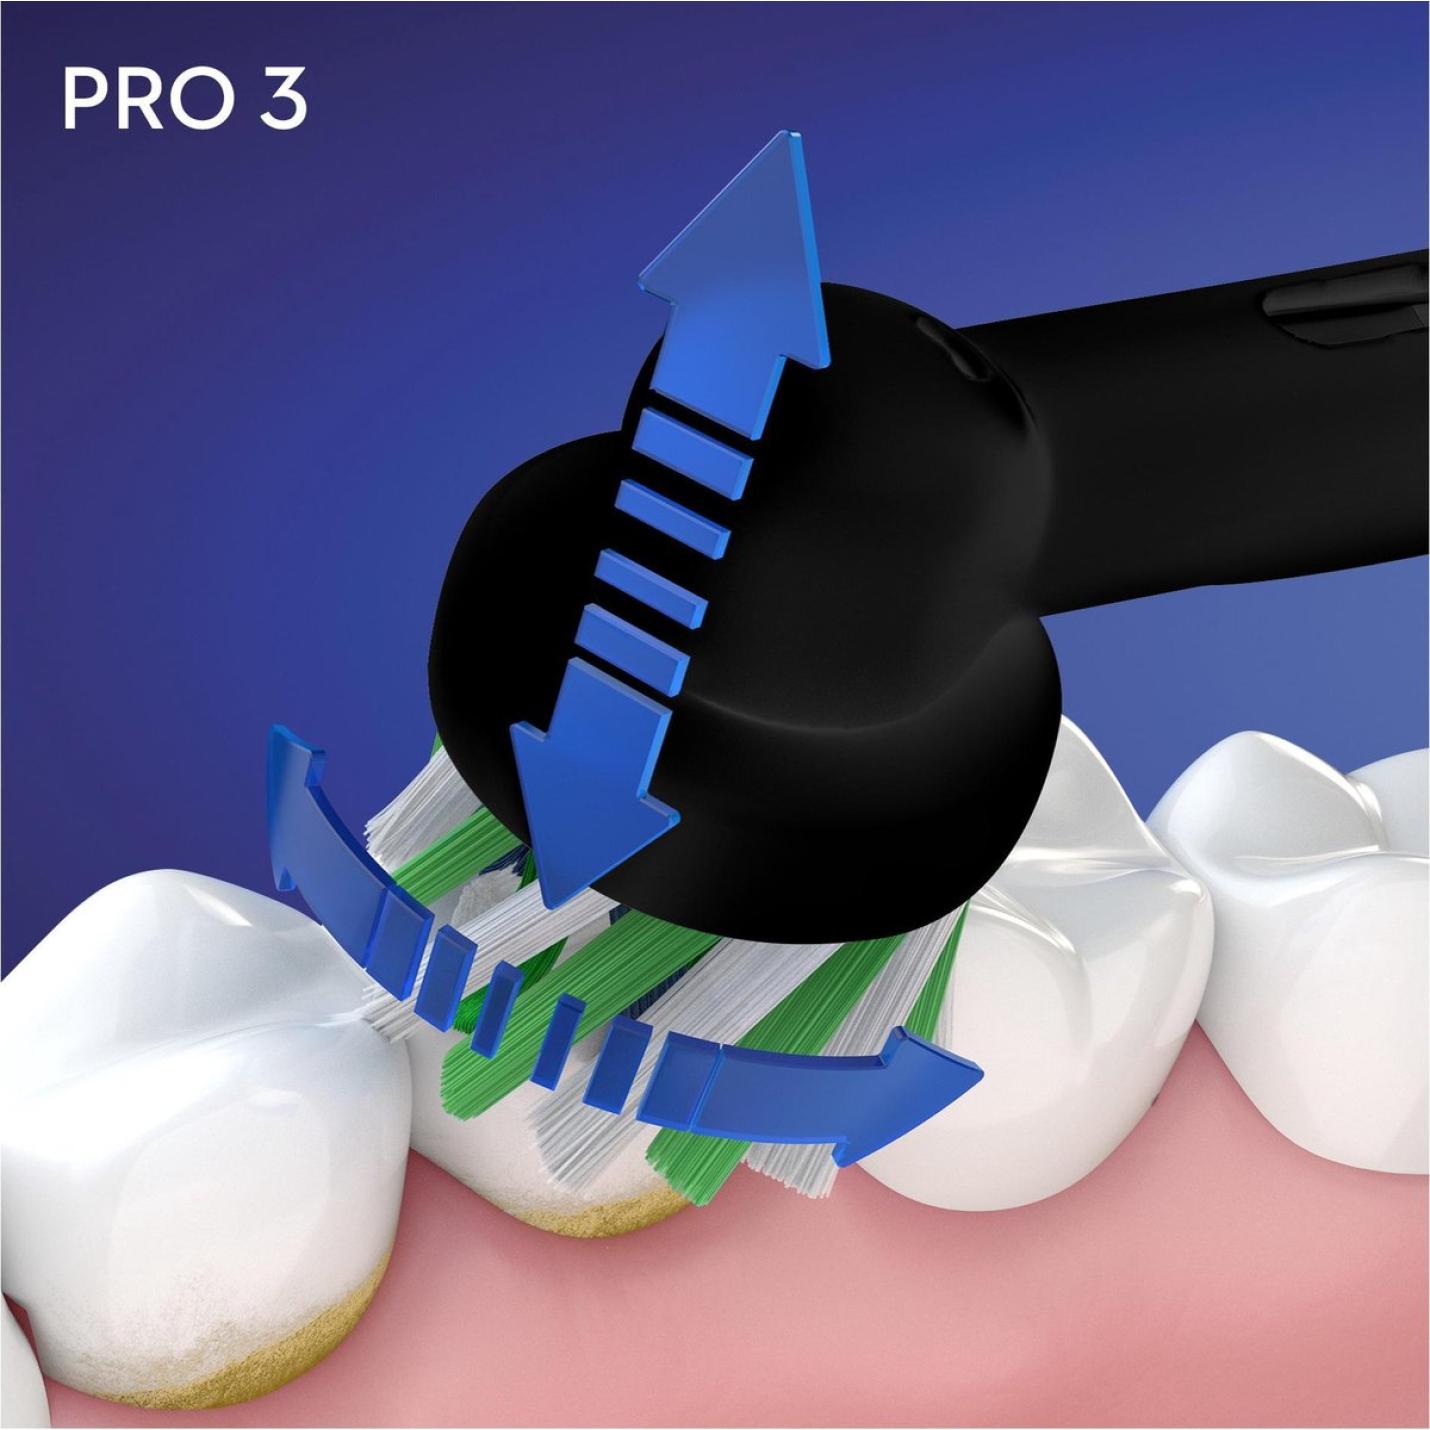 Oral-B PRO 3 - 3500 - Zwarte Elektrische Tandenborstel Ontworpen Door Braun - Incl. reisetui 10